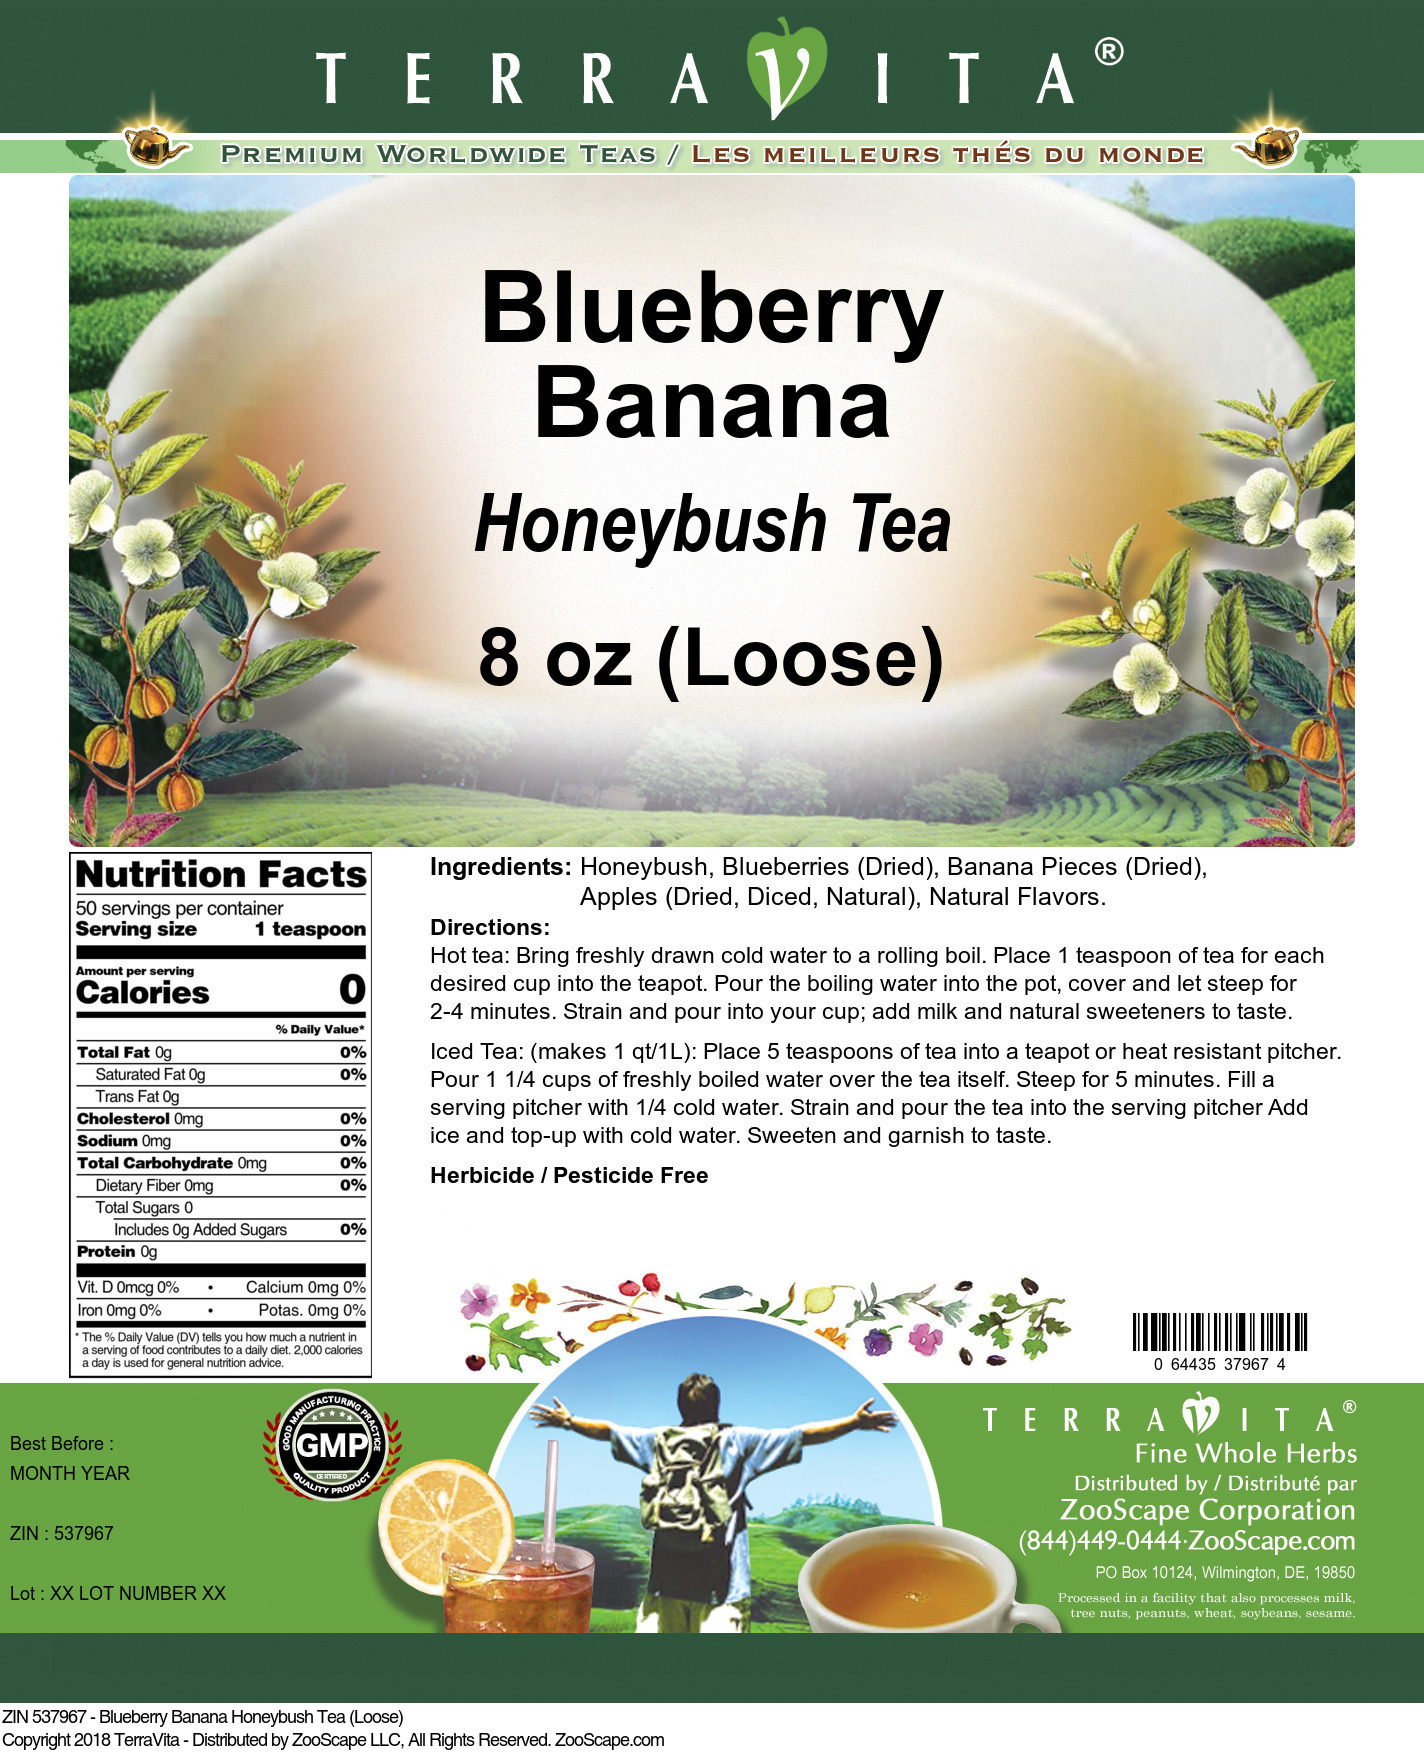 Blueberry Banana Honeybush Tea (Loose) - Label